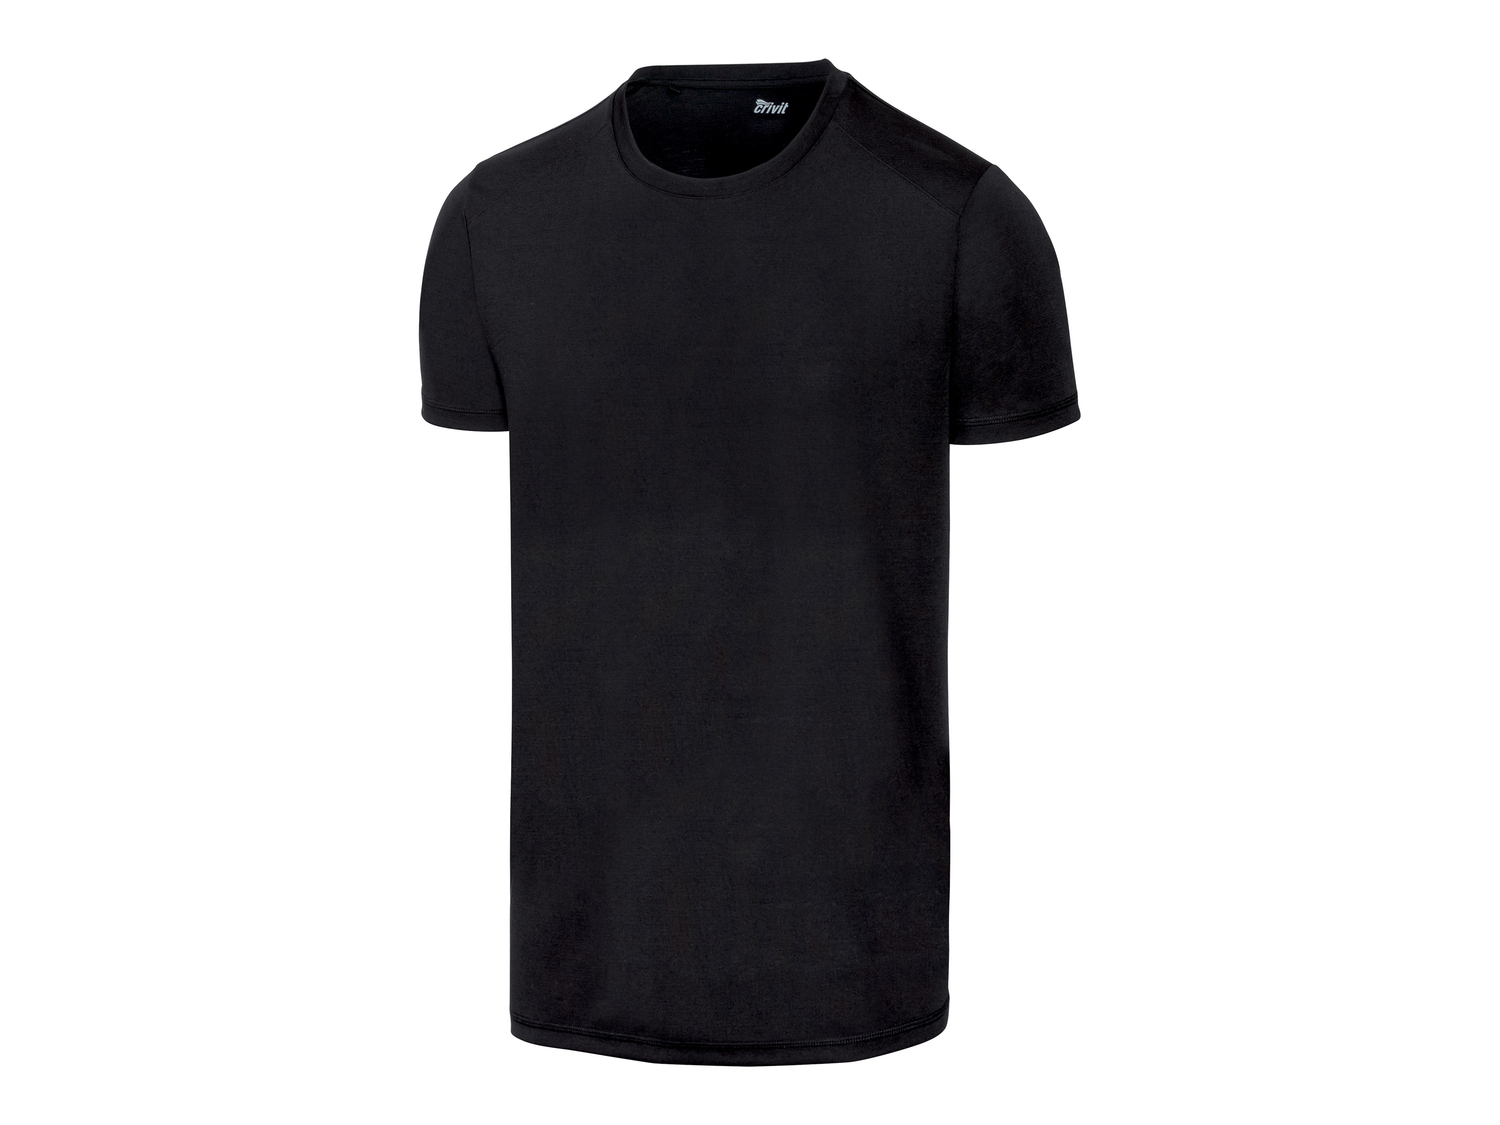 T-shirt sportiva da uomo Crivit, prezzo 4.99 &#8364; 
Misure: S-XL
Taglie disponibili

Caratteristiche

- ...